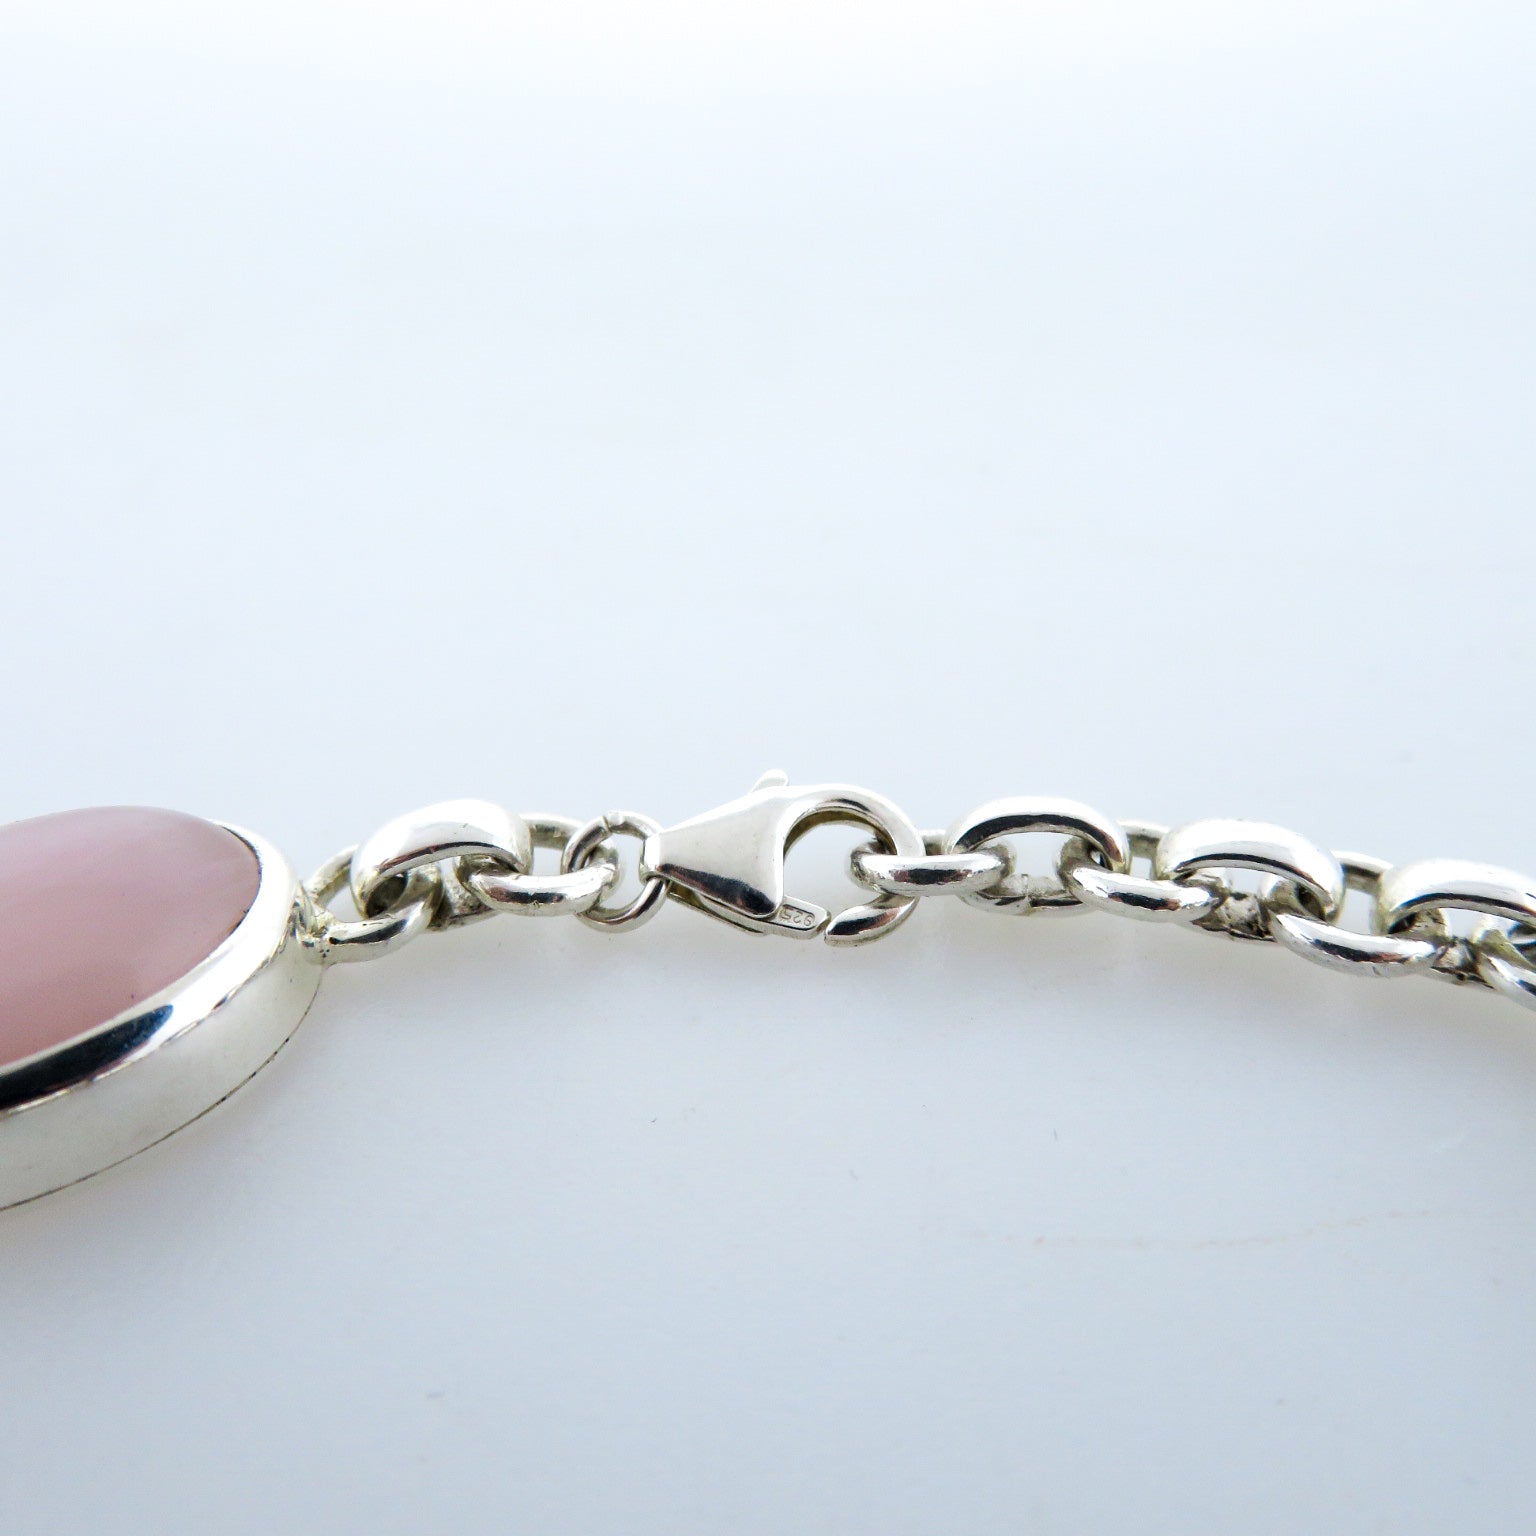 Rose Quartz Bracelet with Sterling Silver